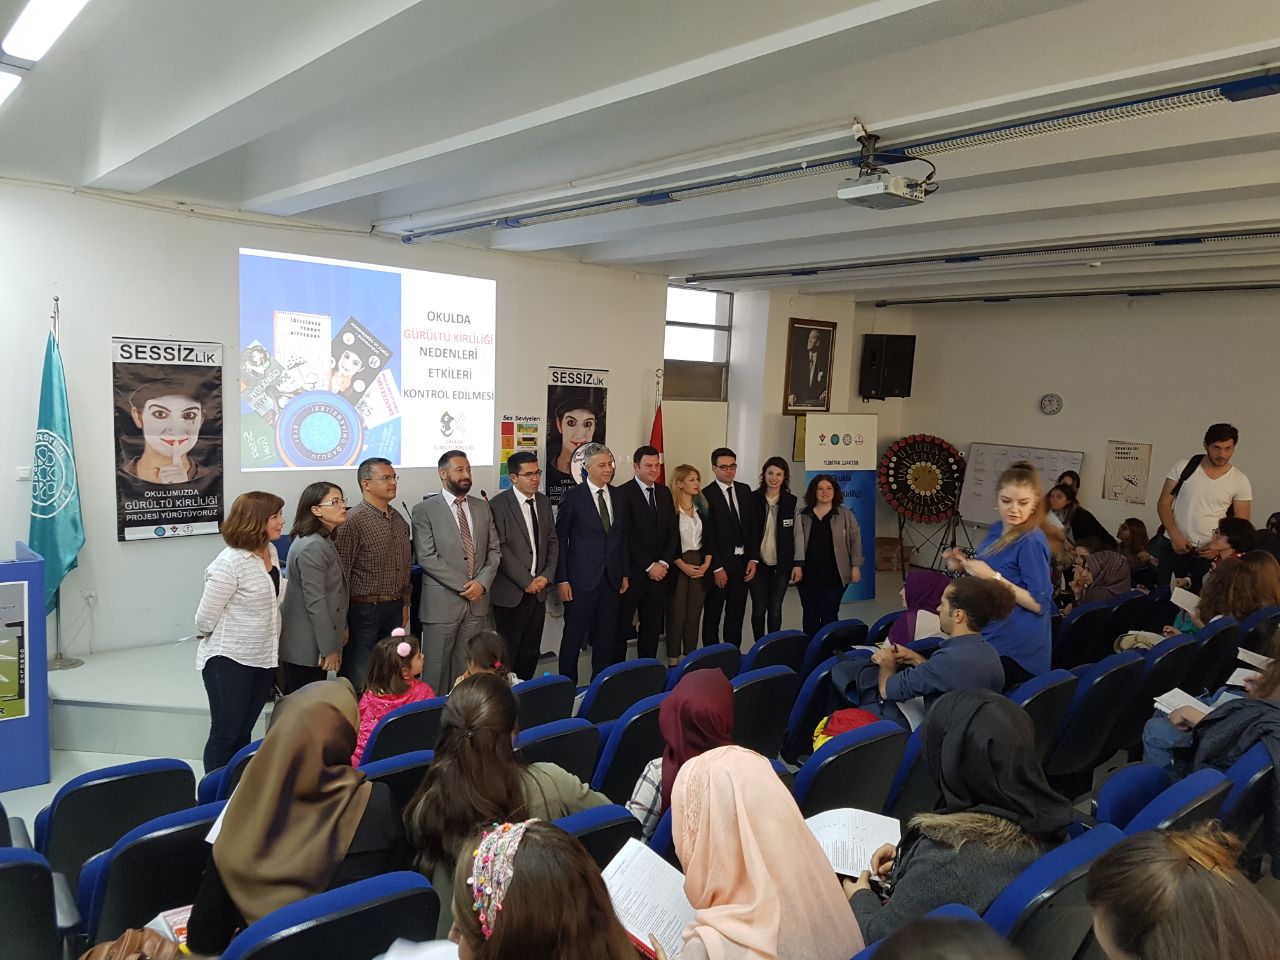  Uludağ Üniversitesi Eğitim Fakültesi’nde Uluslararası Gürültü Farkındalık Günü Etkinlikleri Yapıldı 